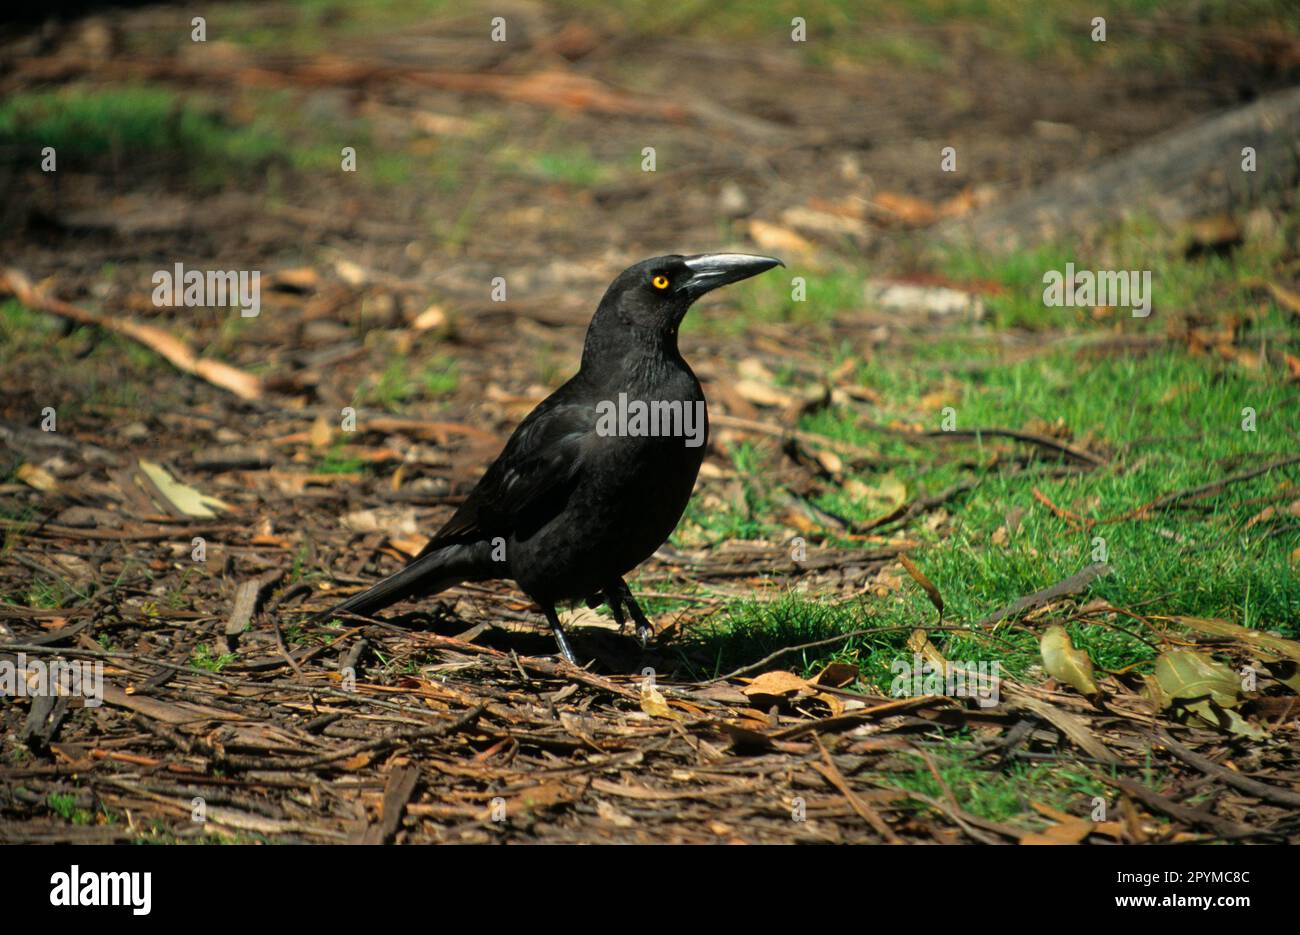 Tasmanian Shrike Crow, Tasmanian Shrike Crow, Tasmanian Shrike Crows, Crow, Corvids, Songbirds, Animals, Birds Stock Photo